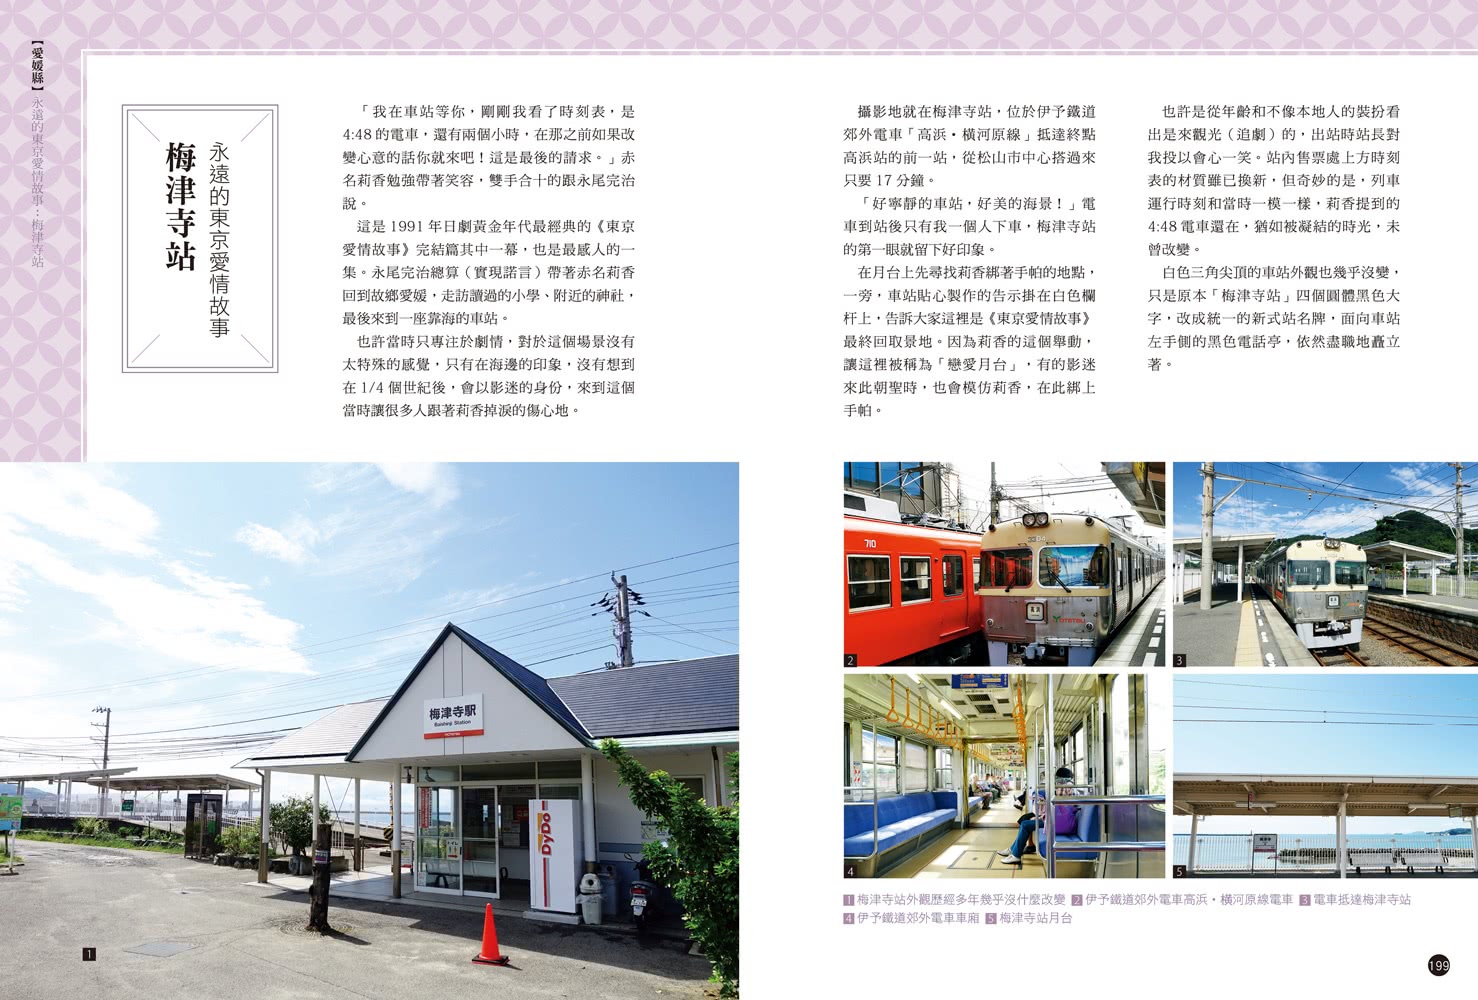 四國 深度休日提案：一張JR PASS玩到底！香川、愛媛、高知、德島 行程╳交通╳景點 最全面的自助攻略！ 暢